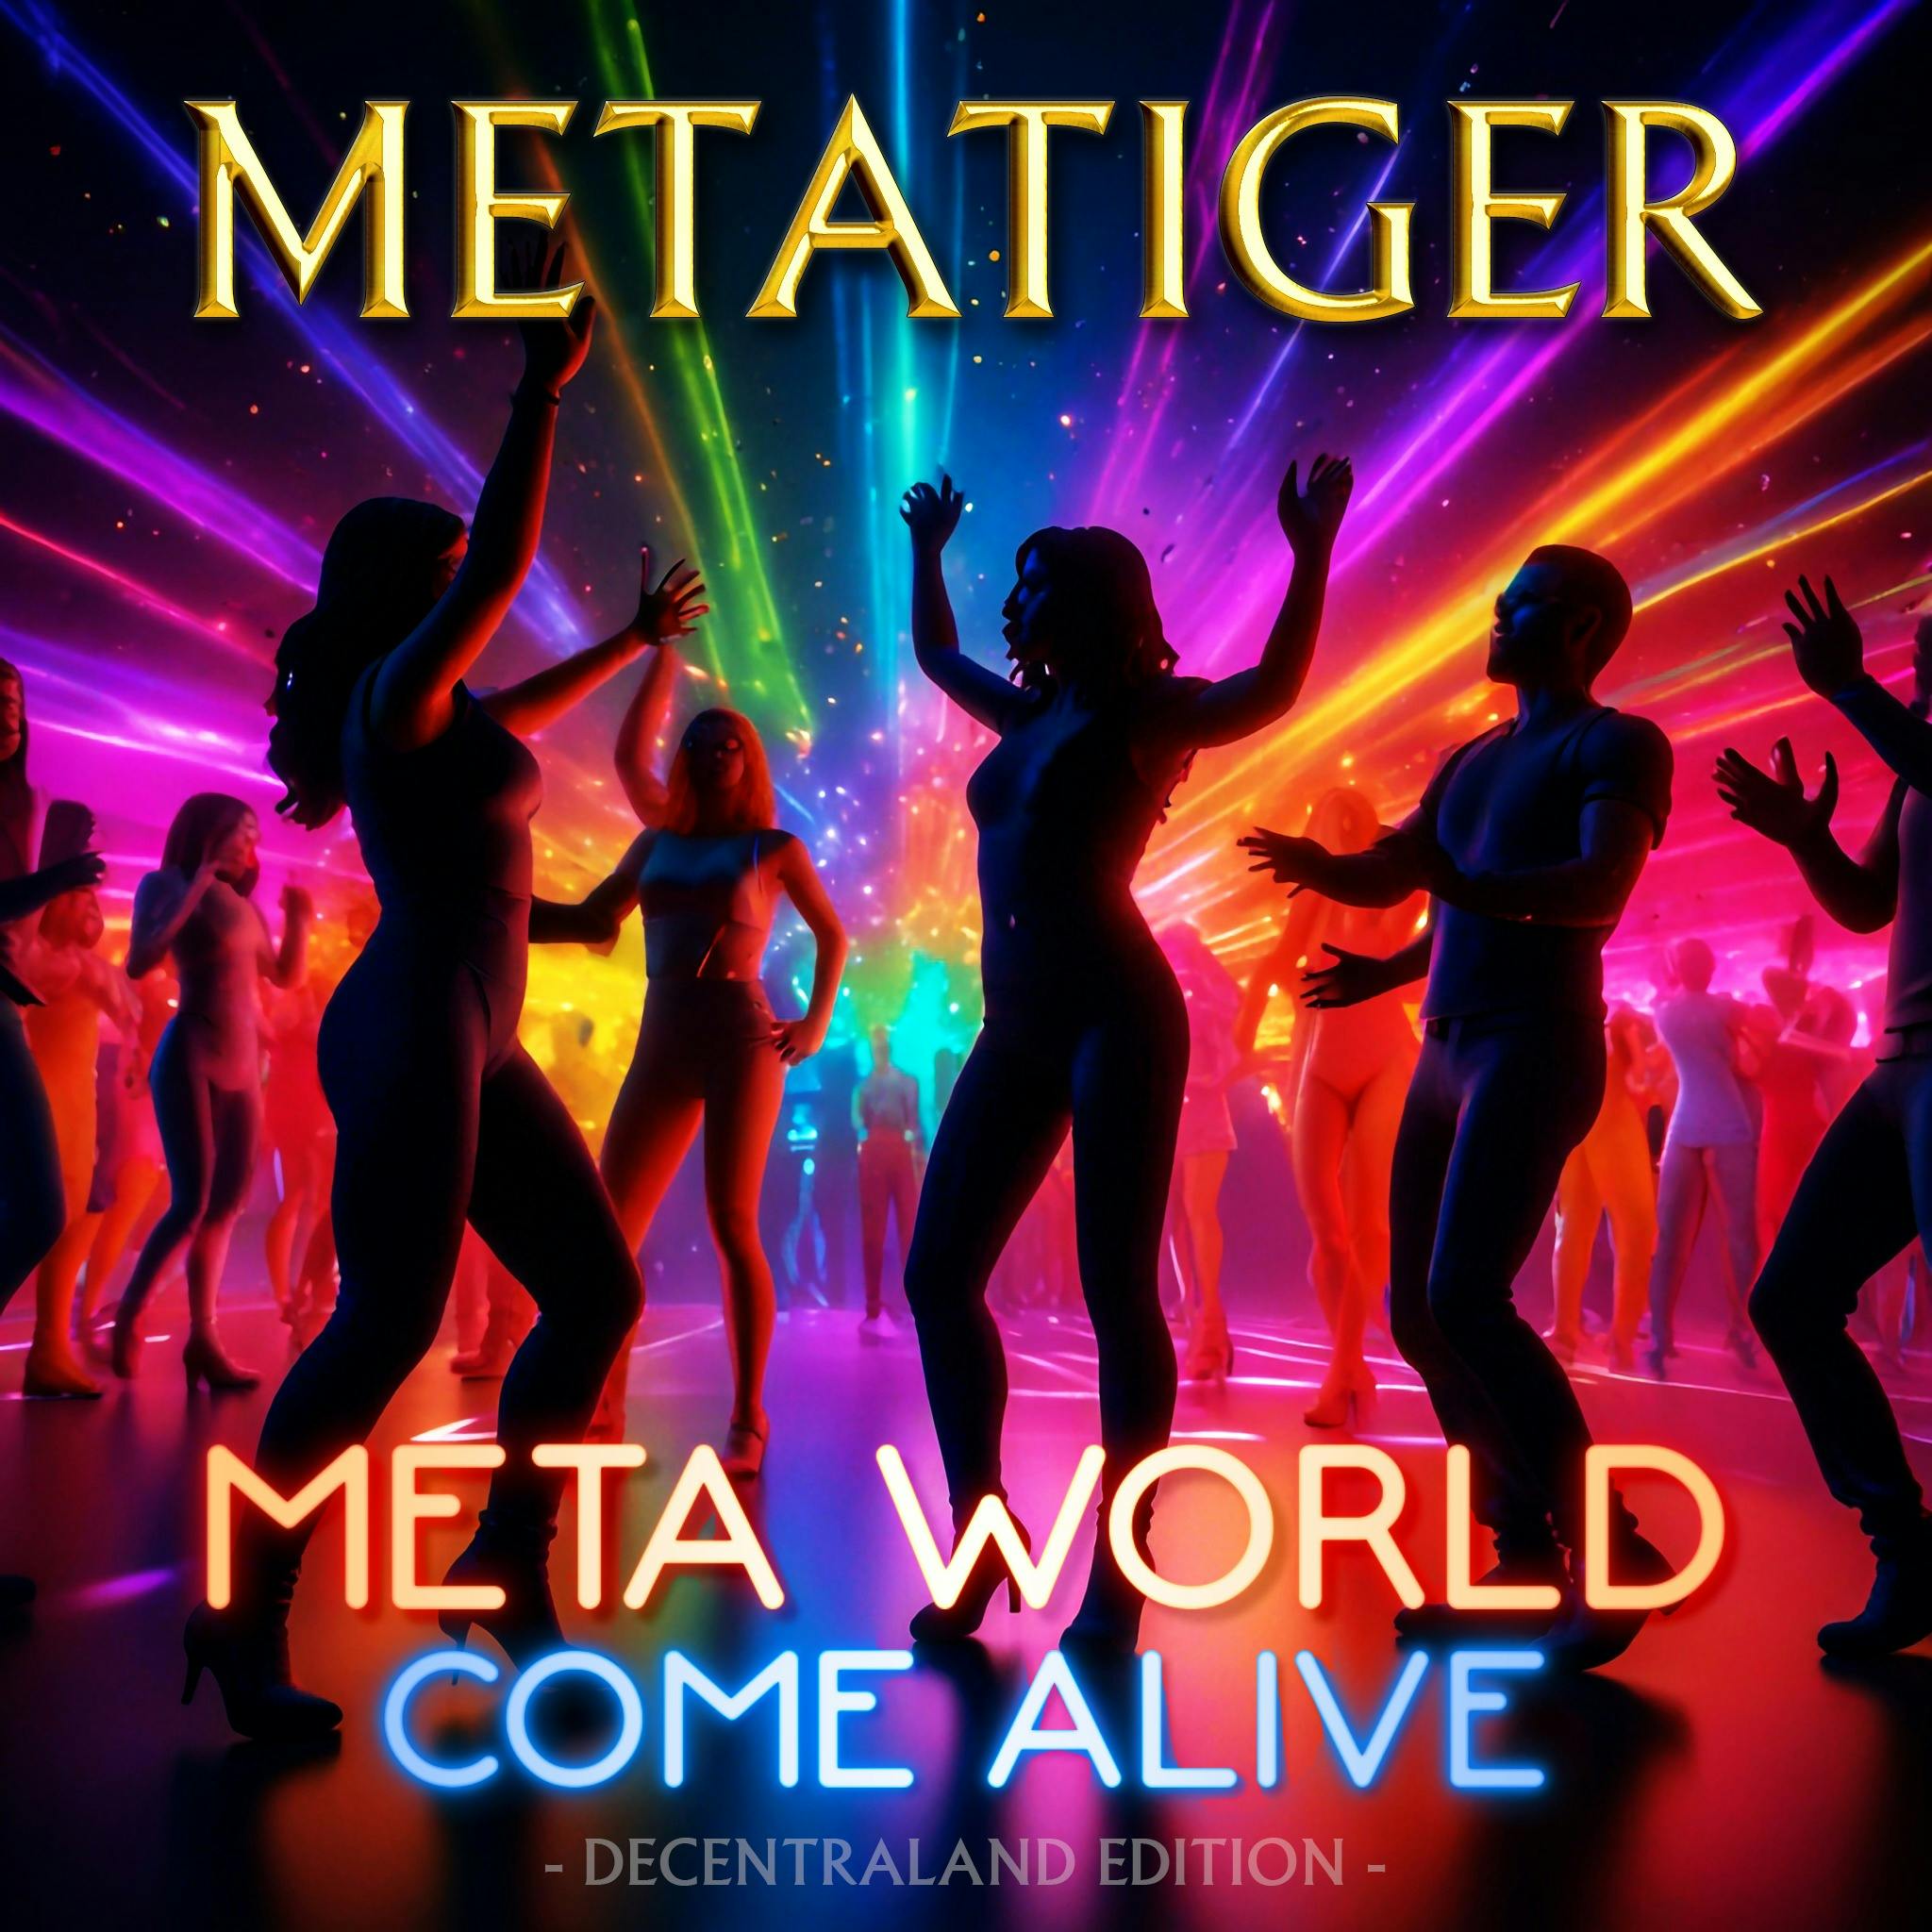 Meta World Come Alive